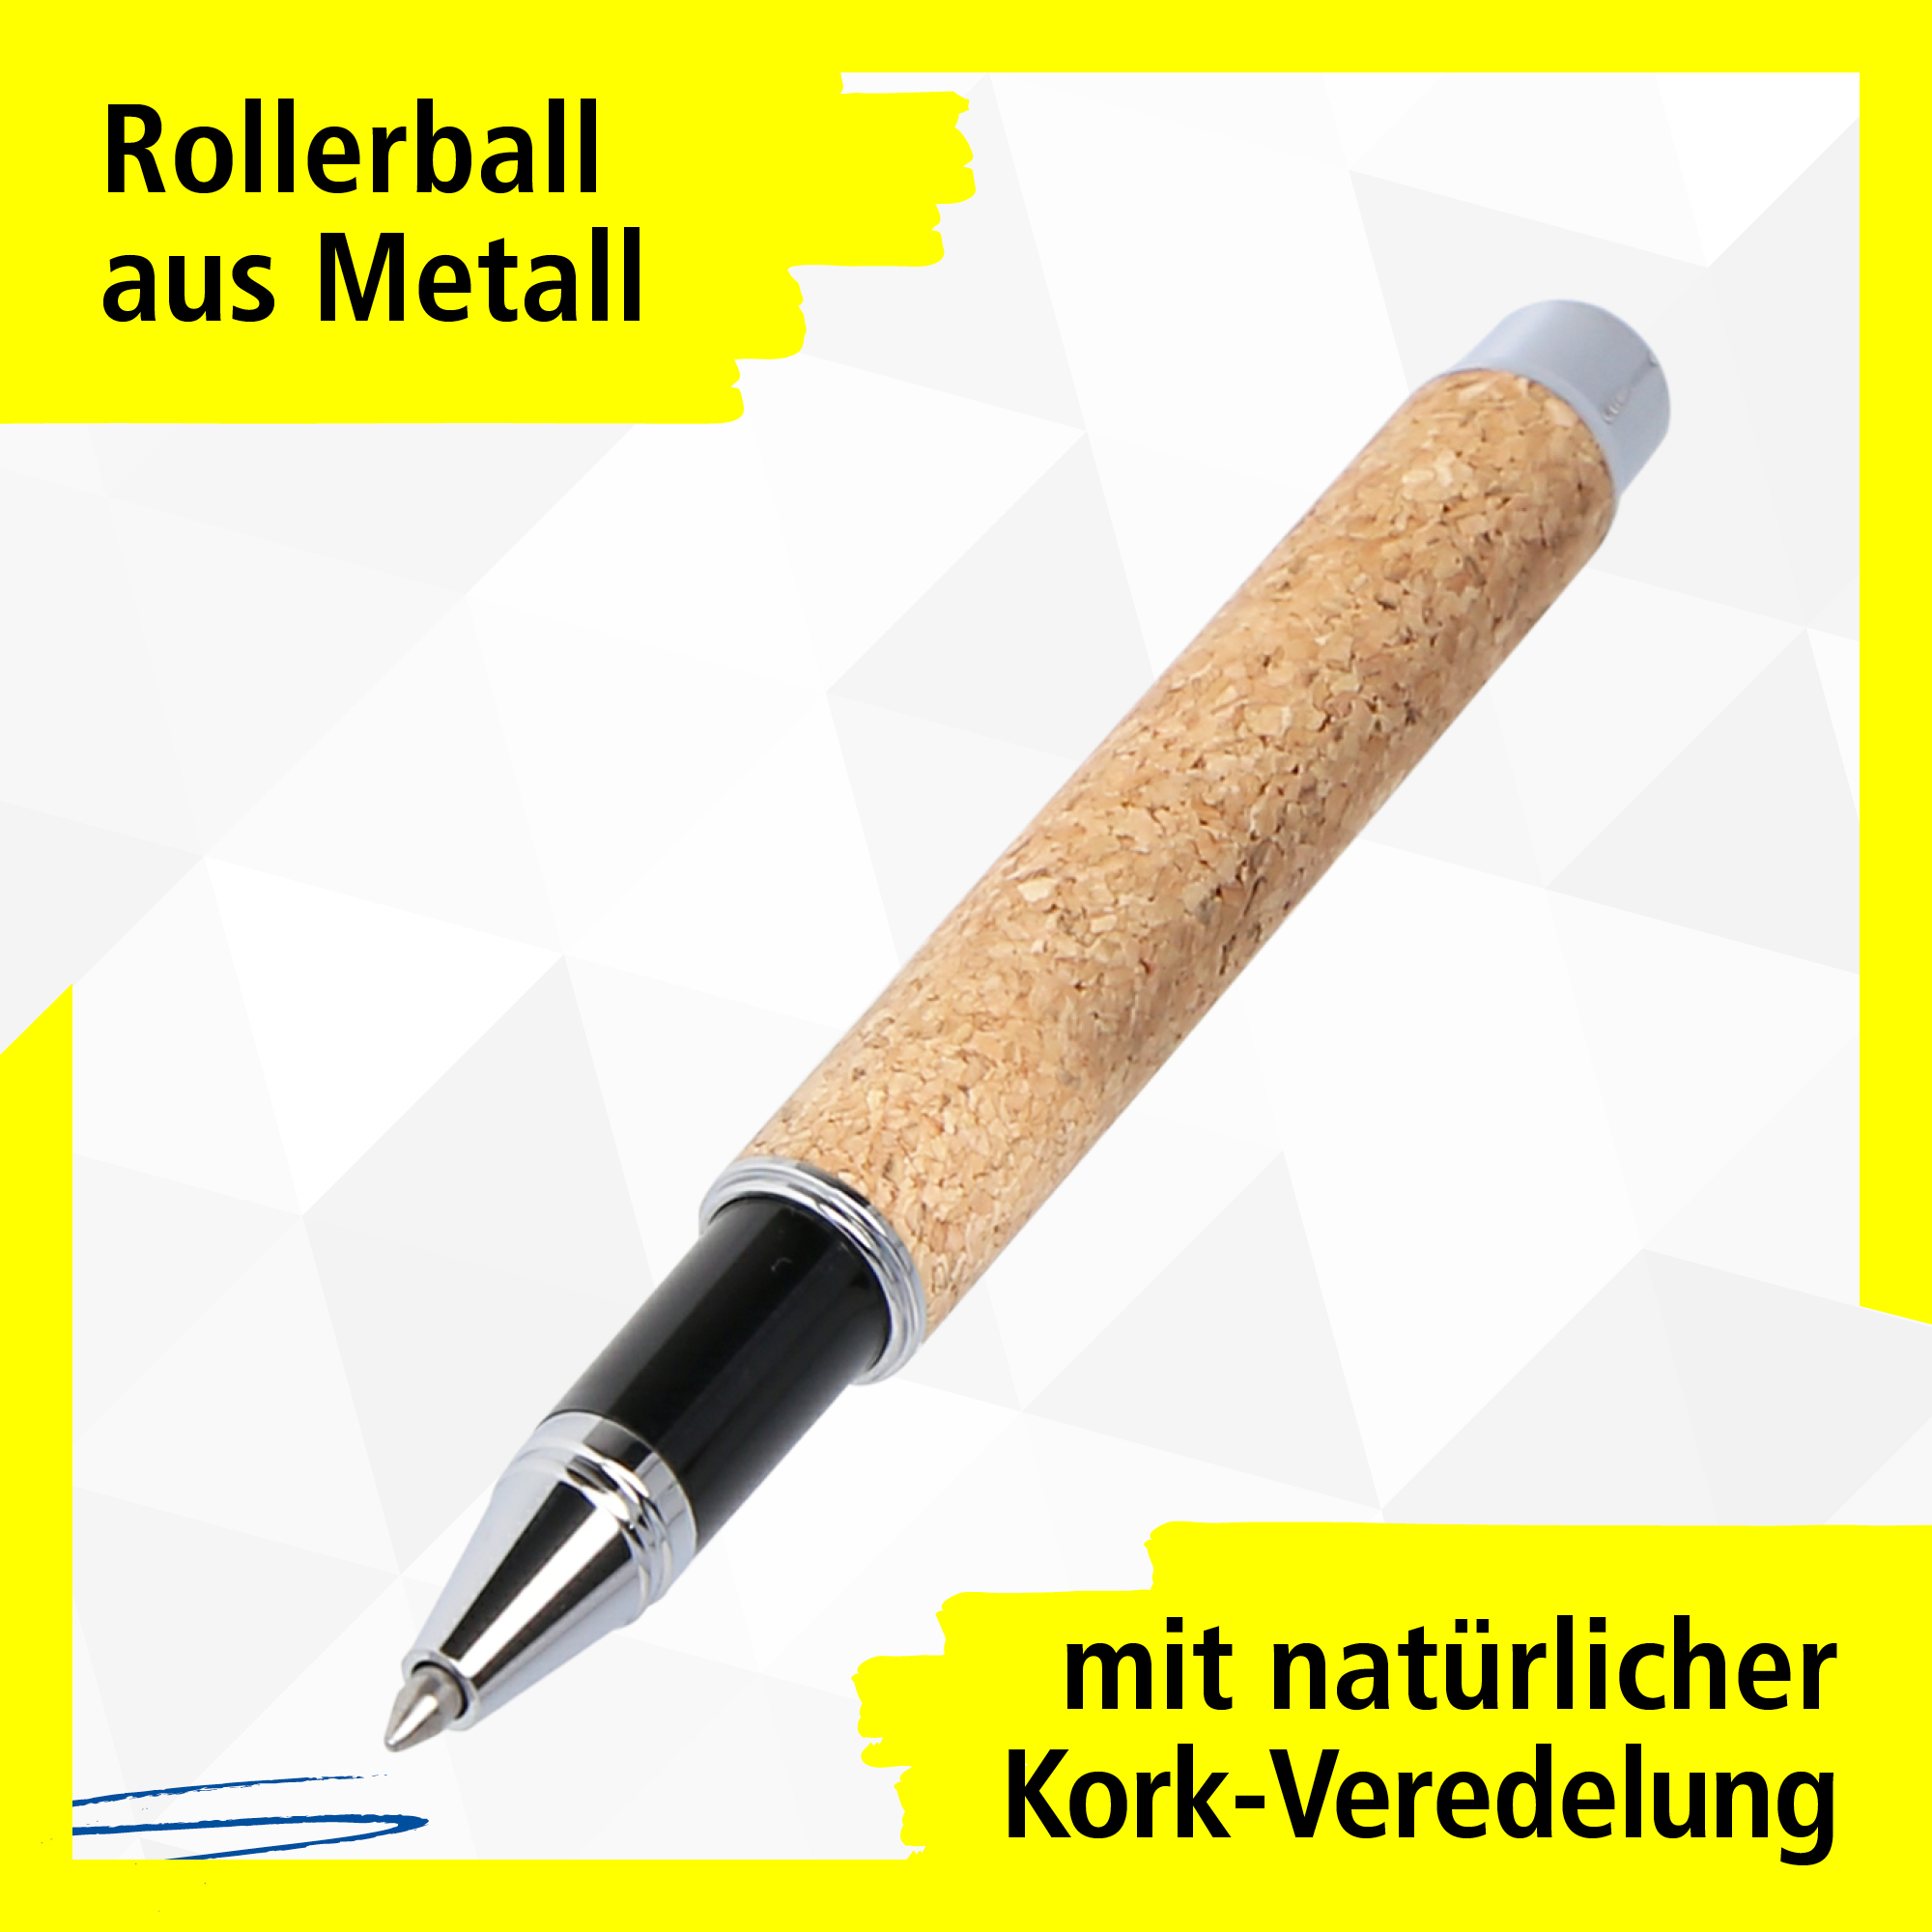 Rollerball aus Metall mit natürlicher Kork-Veredelung